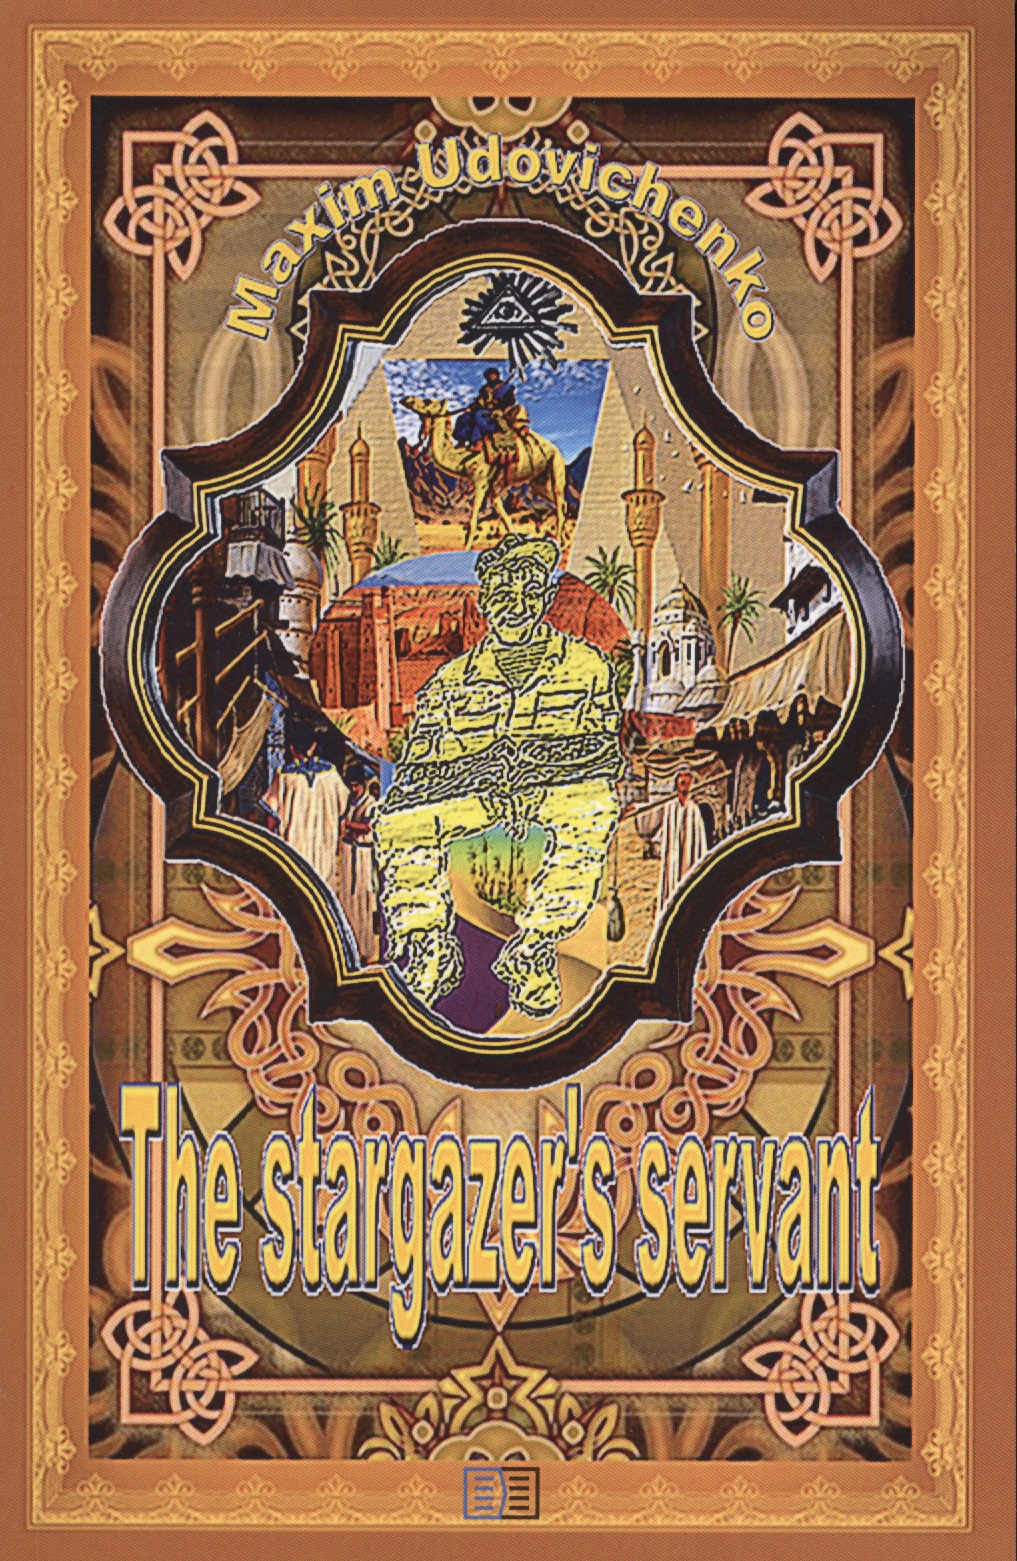 The stargazer’s servant udovichenko maxim the stargazer s servant